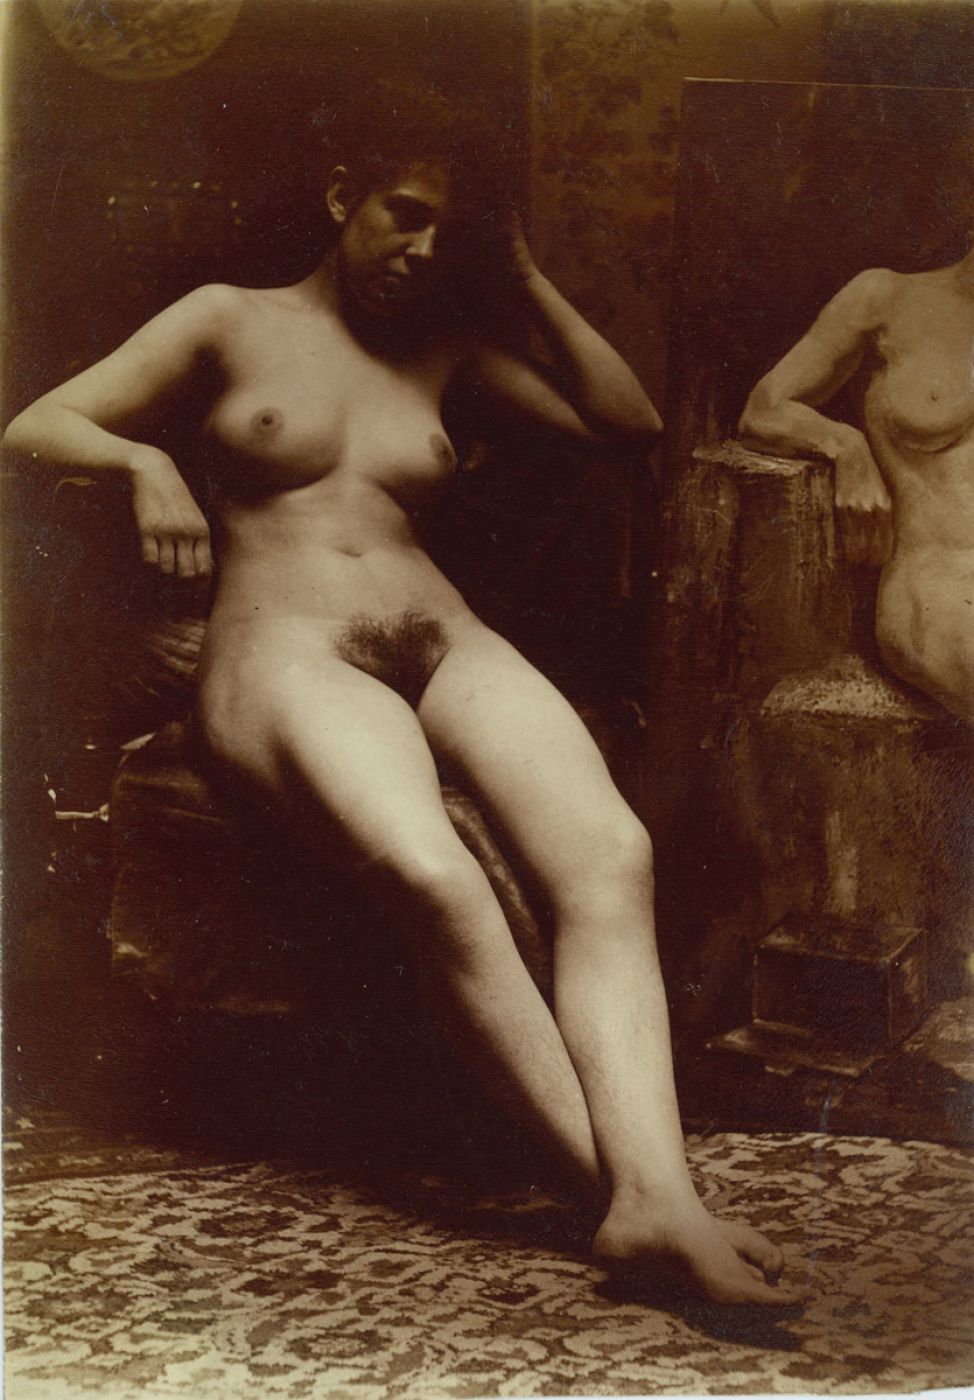 Henri Oltramare, “Untitled”, 1890 ca.